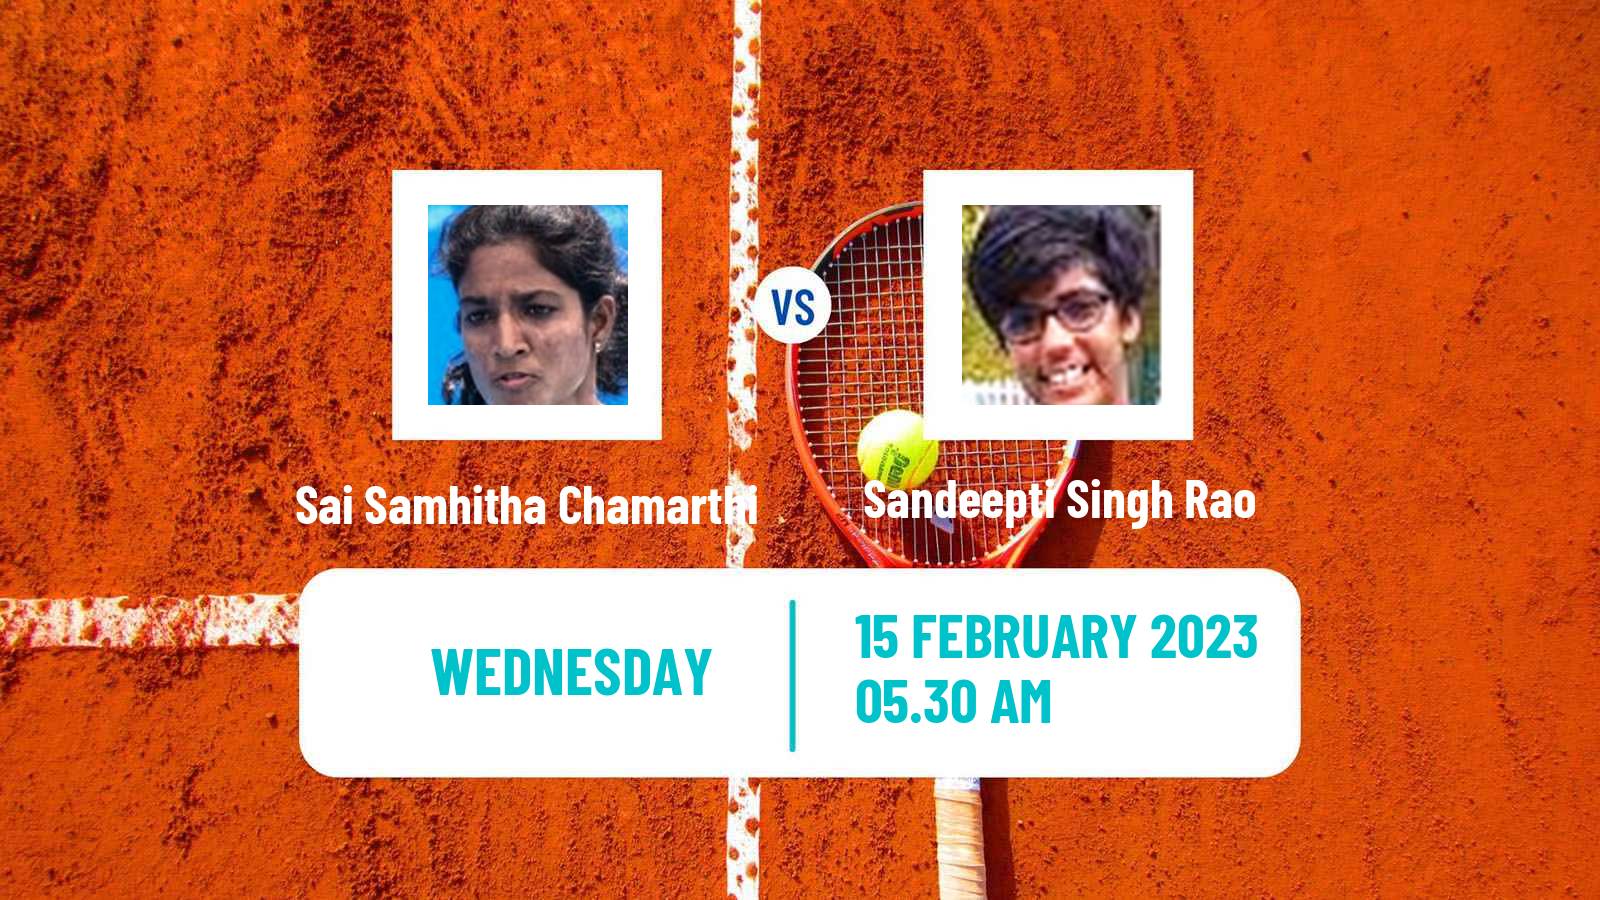 Tennis ITF Tournaments Sai Samhitha Chamarthi - Sandeepti Singh Rao